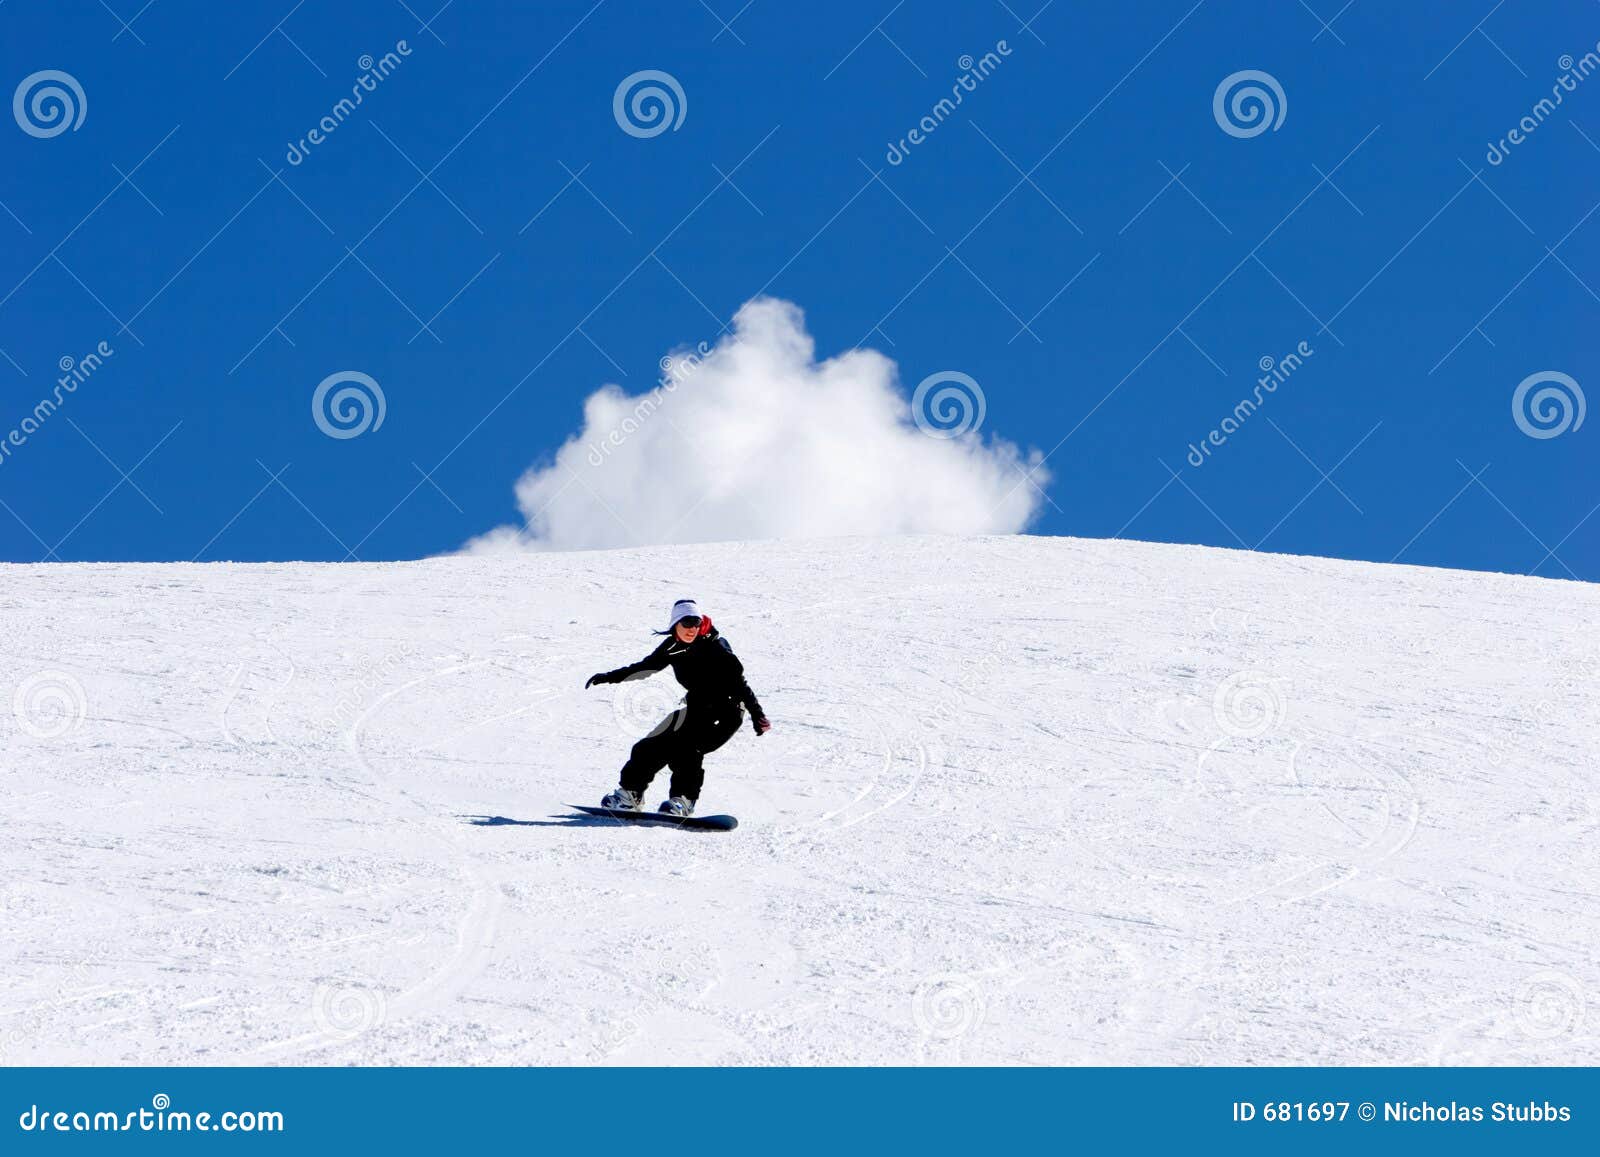 woman snowboarding on slopes of pradollano ski resort in spain